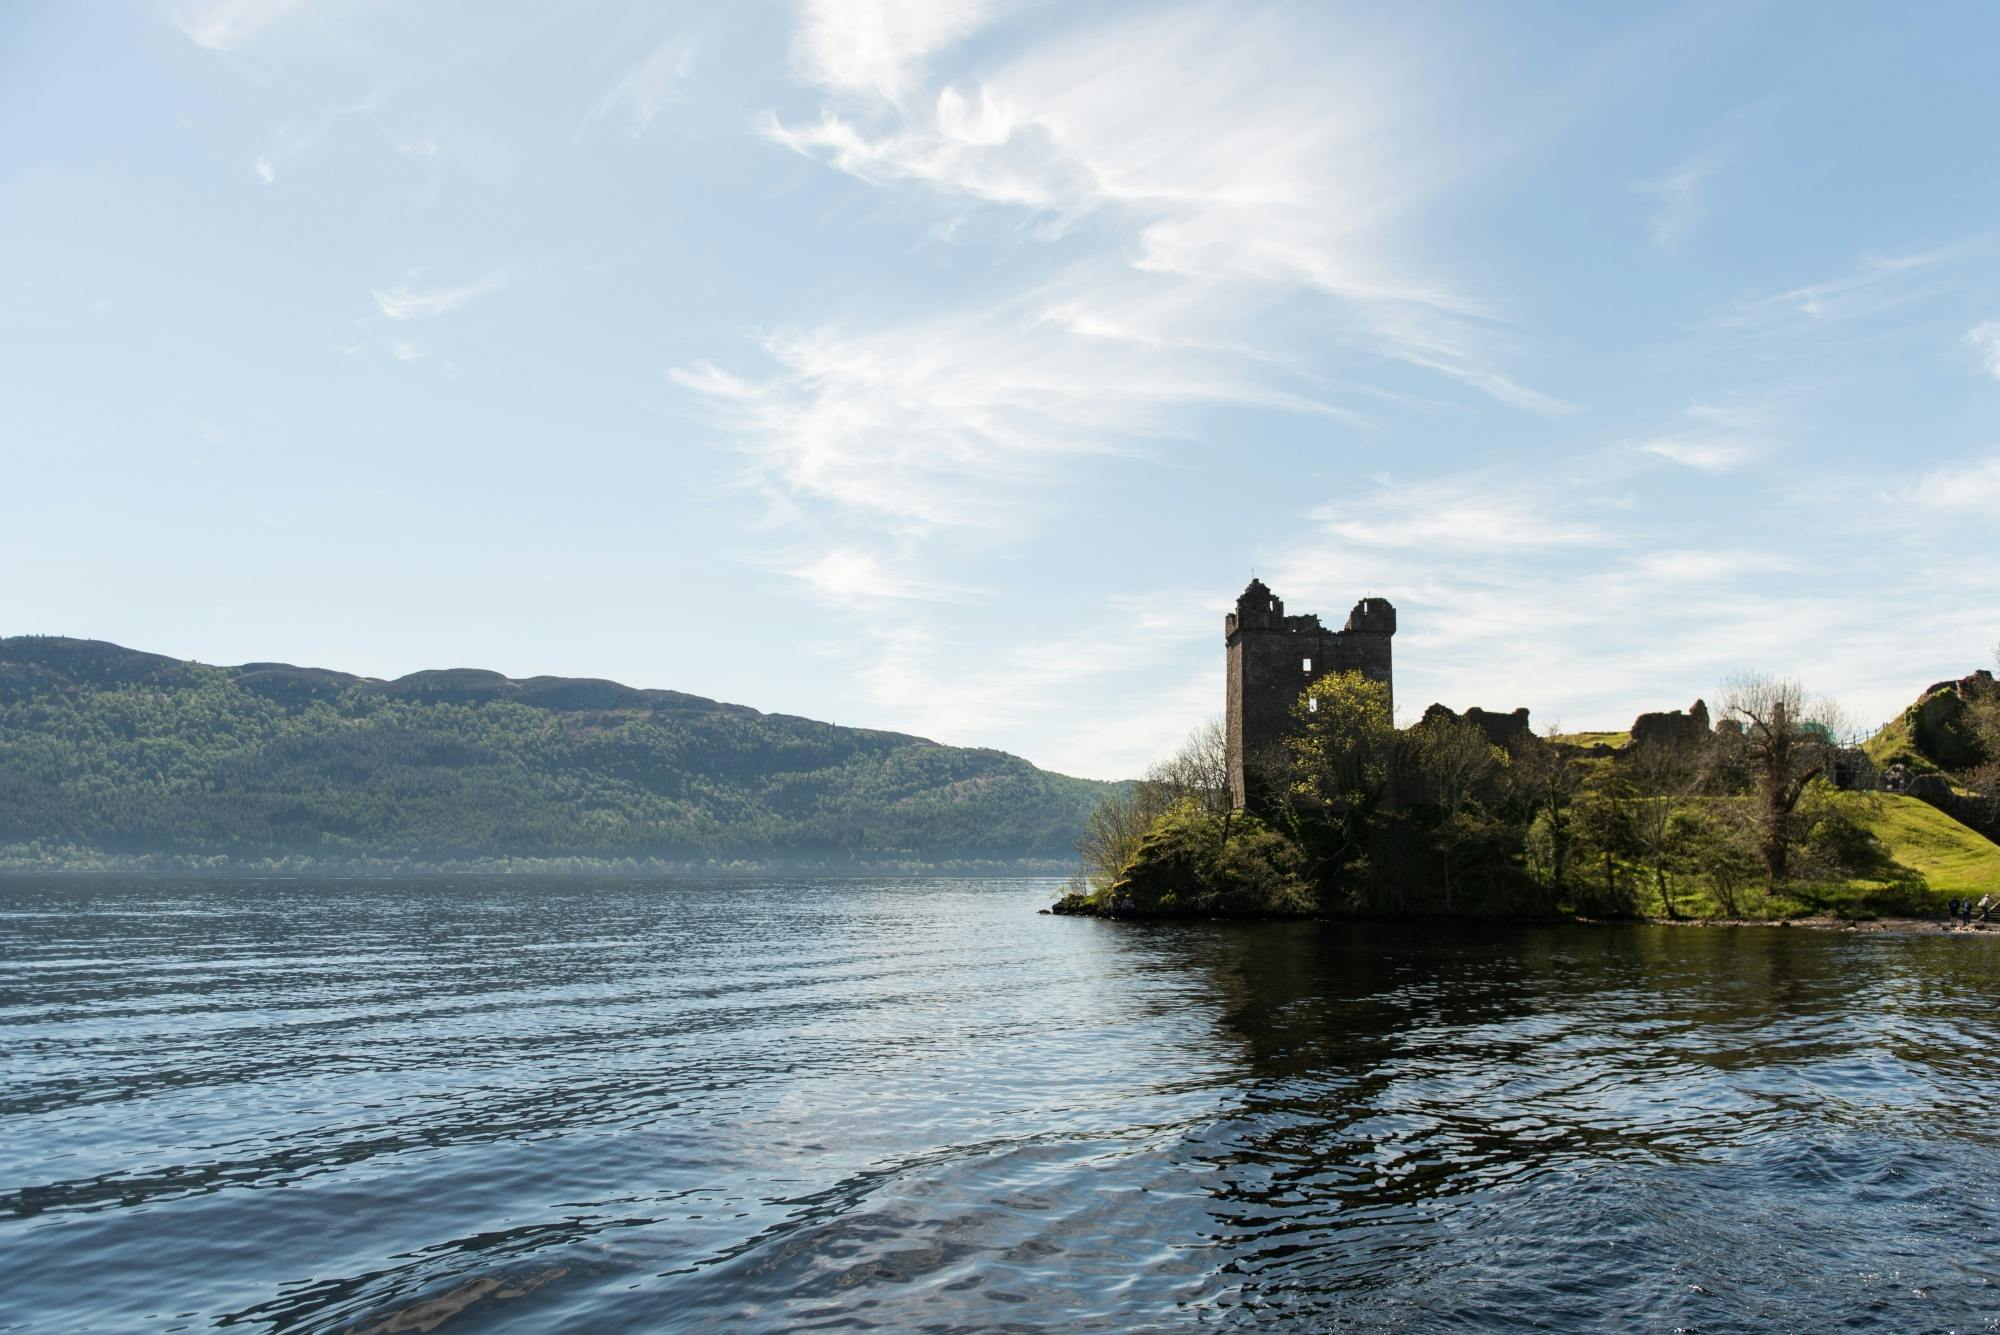 Excursão de 2 dias ao Loch Ness, Inverness e Highlands saindo de Edimburgo